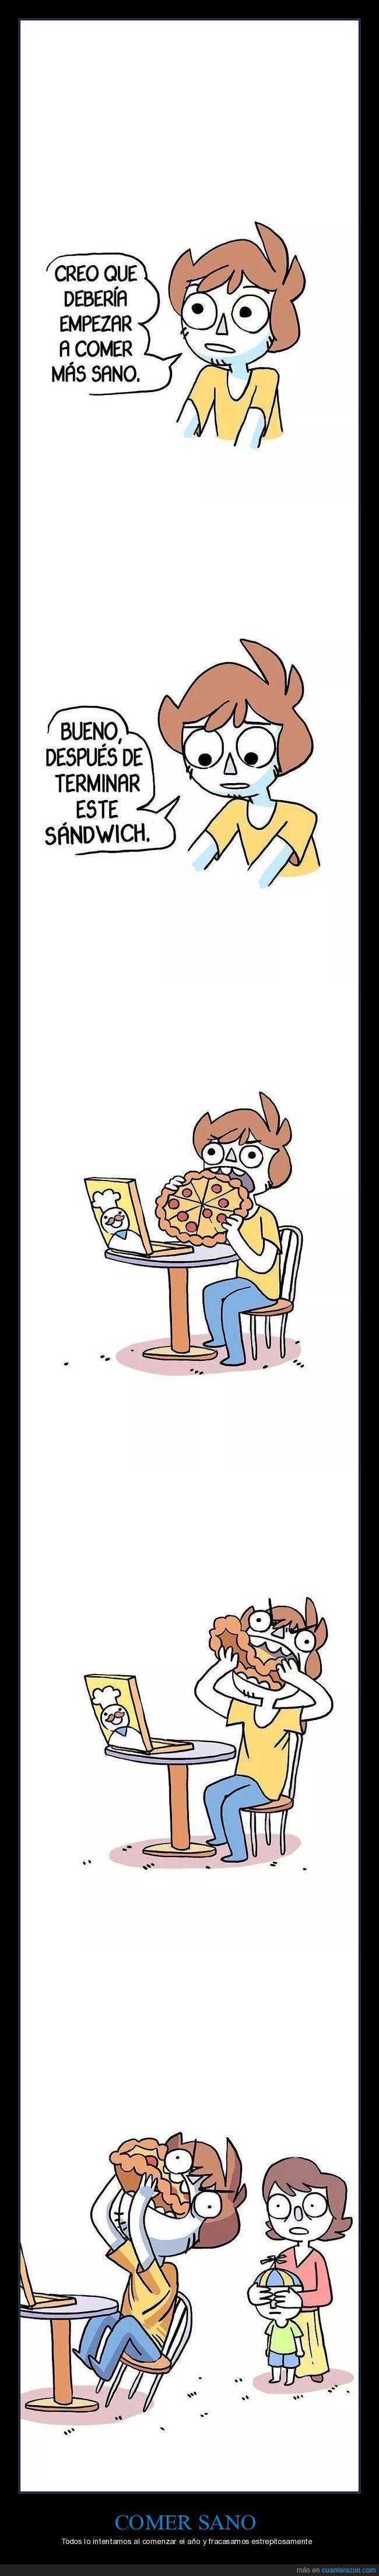 comer,sano,sandwich,pizza